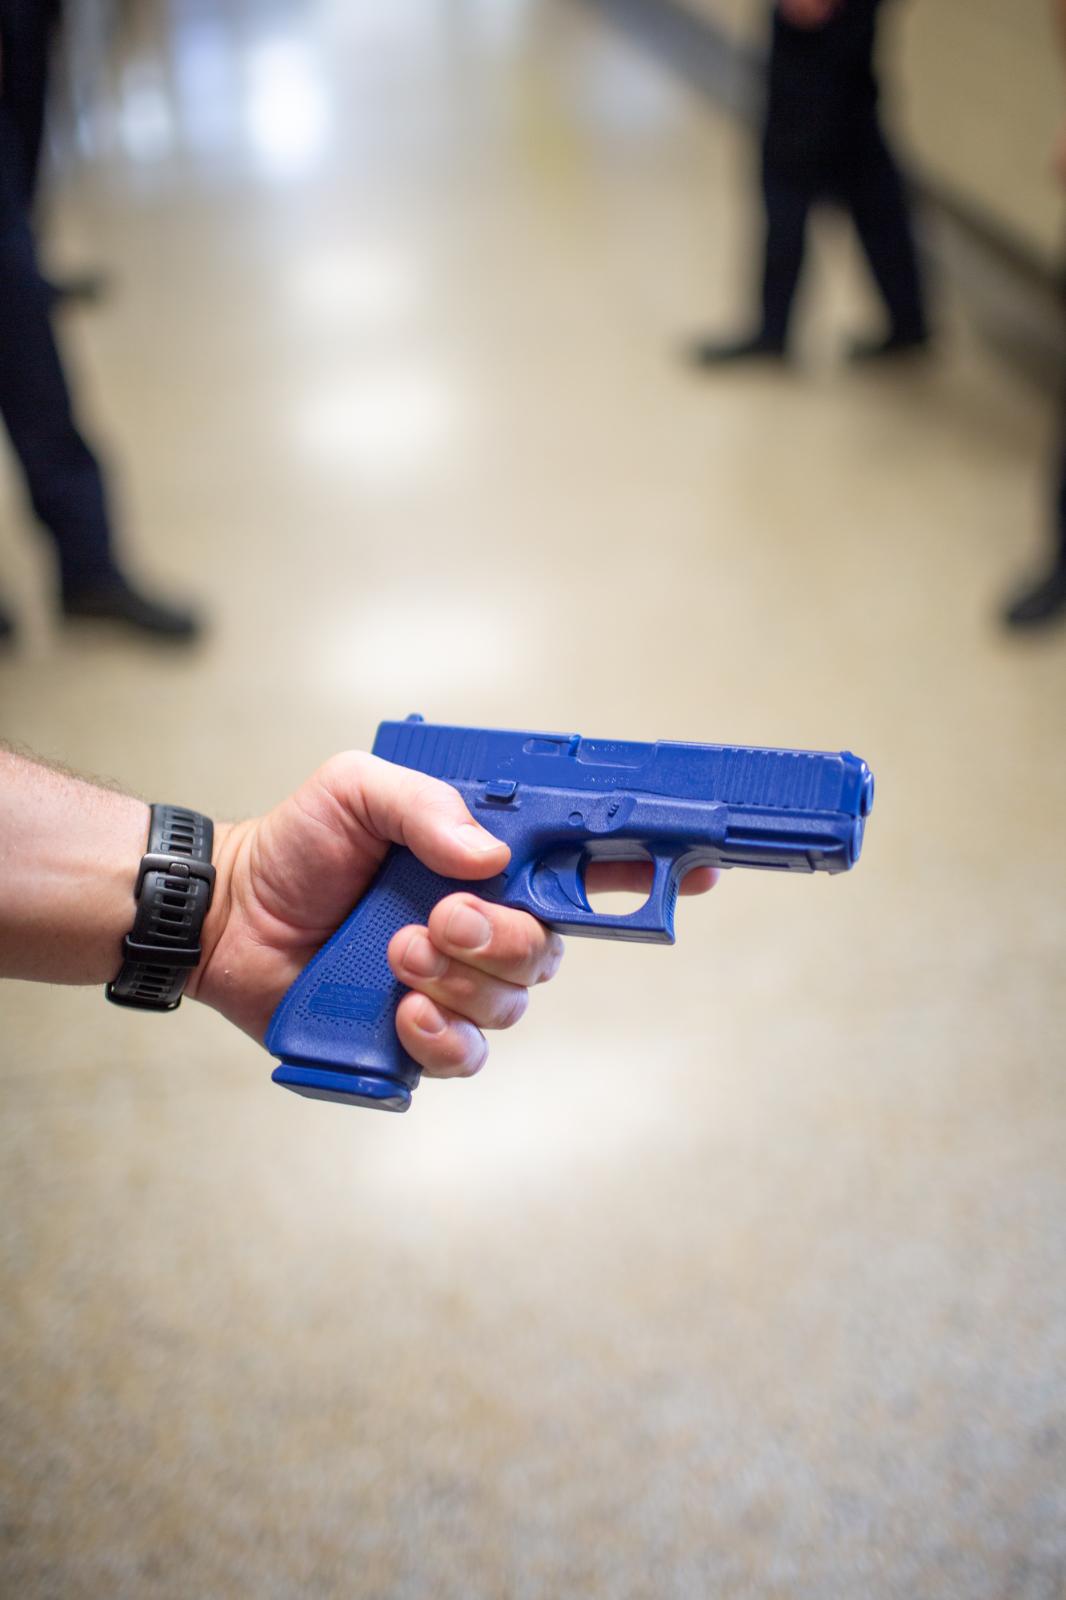 HELL DRILL * Warning* - An officer displays a "blue" replica handgun...